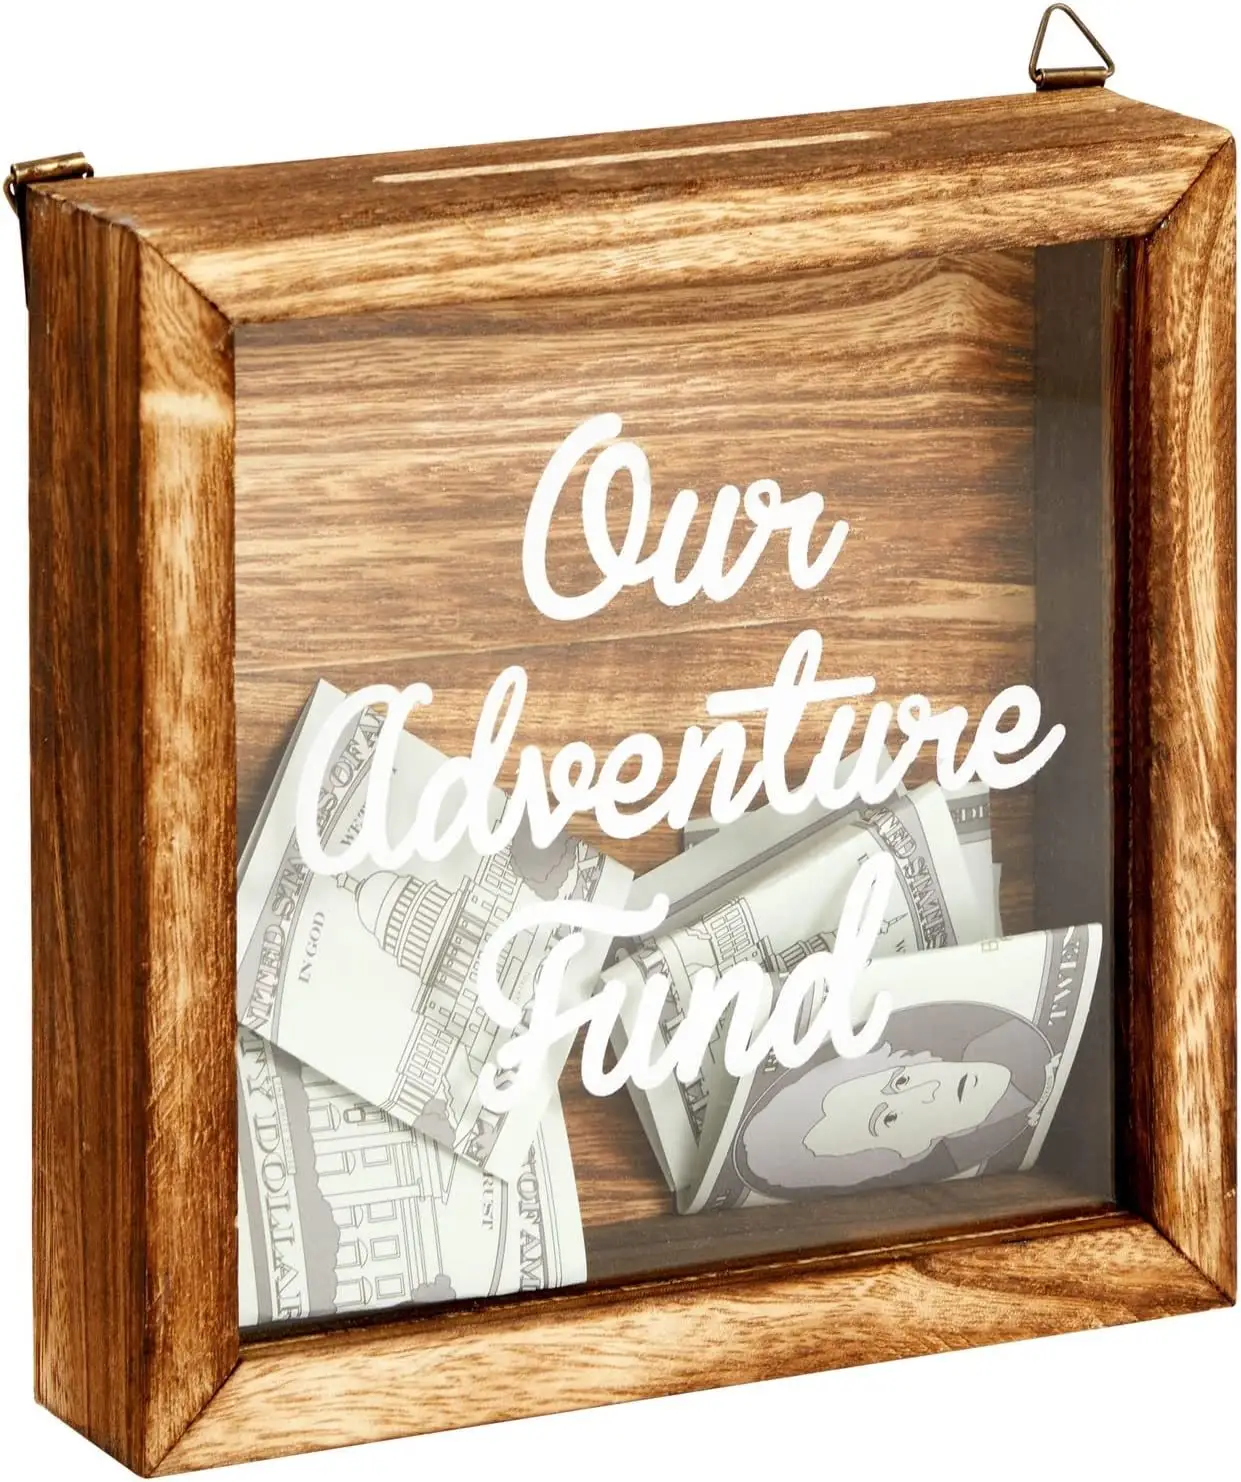 Notre fonds d'aventure Tirelire de voyage Tirelire en bois pour vacances Fun Adventure Archive Box